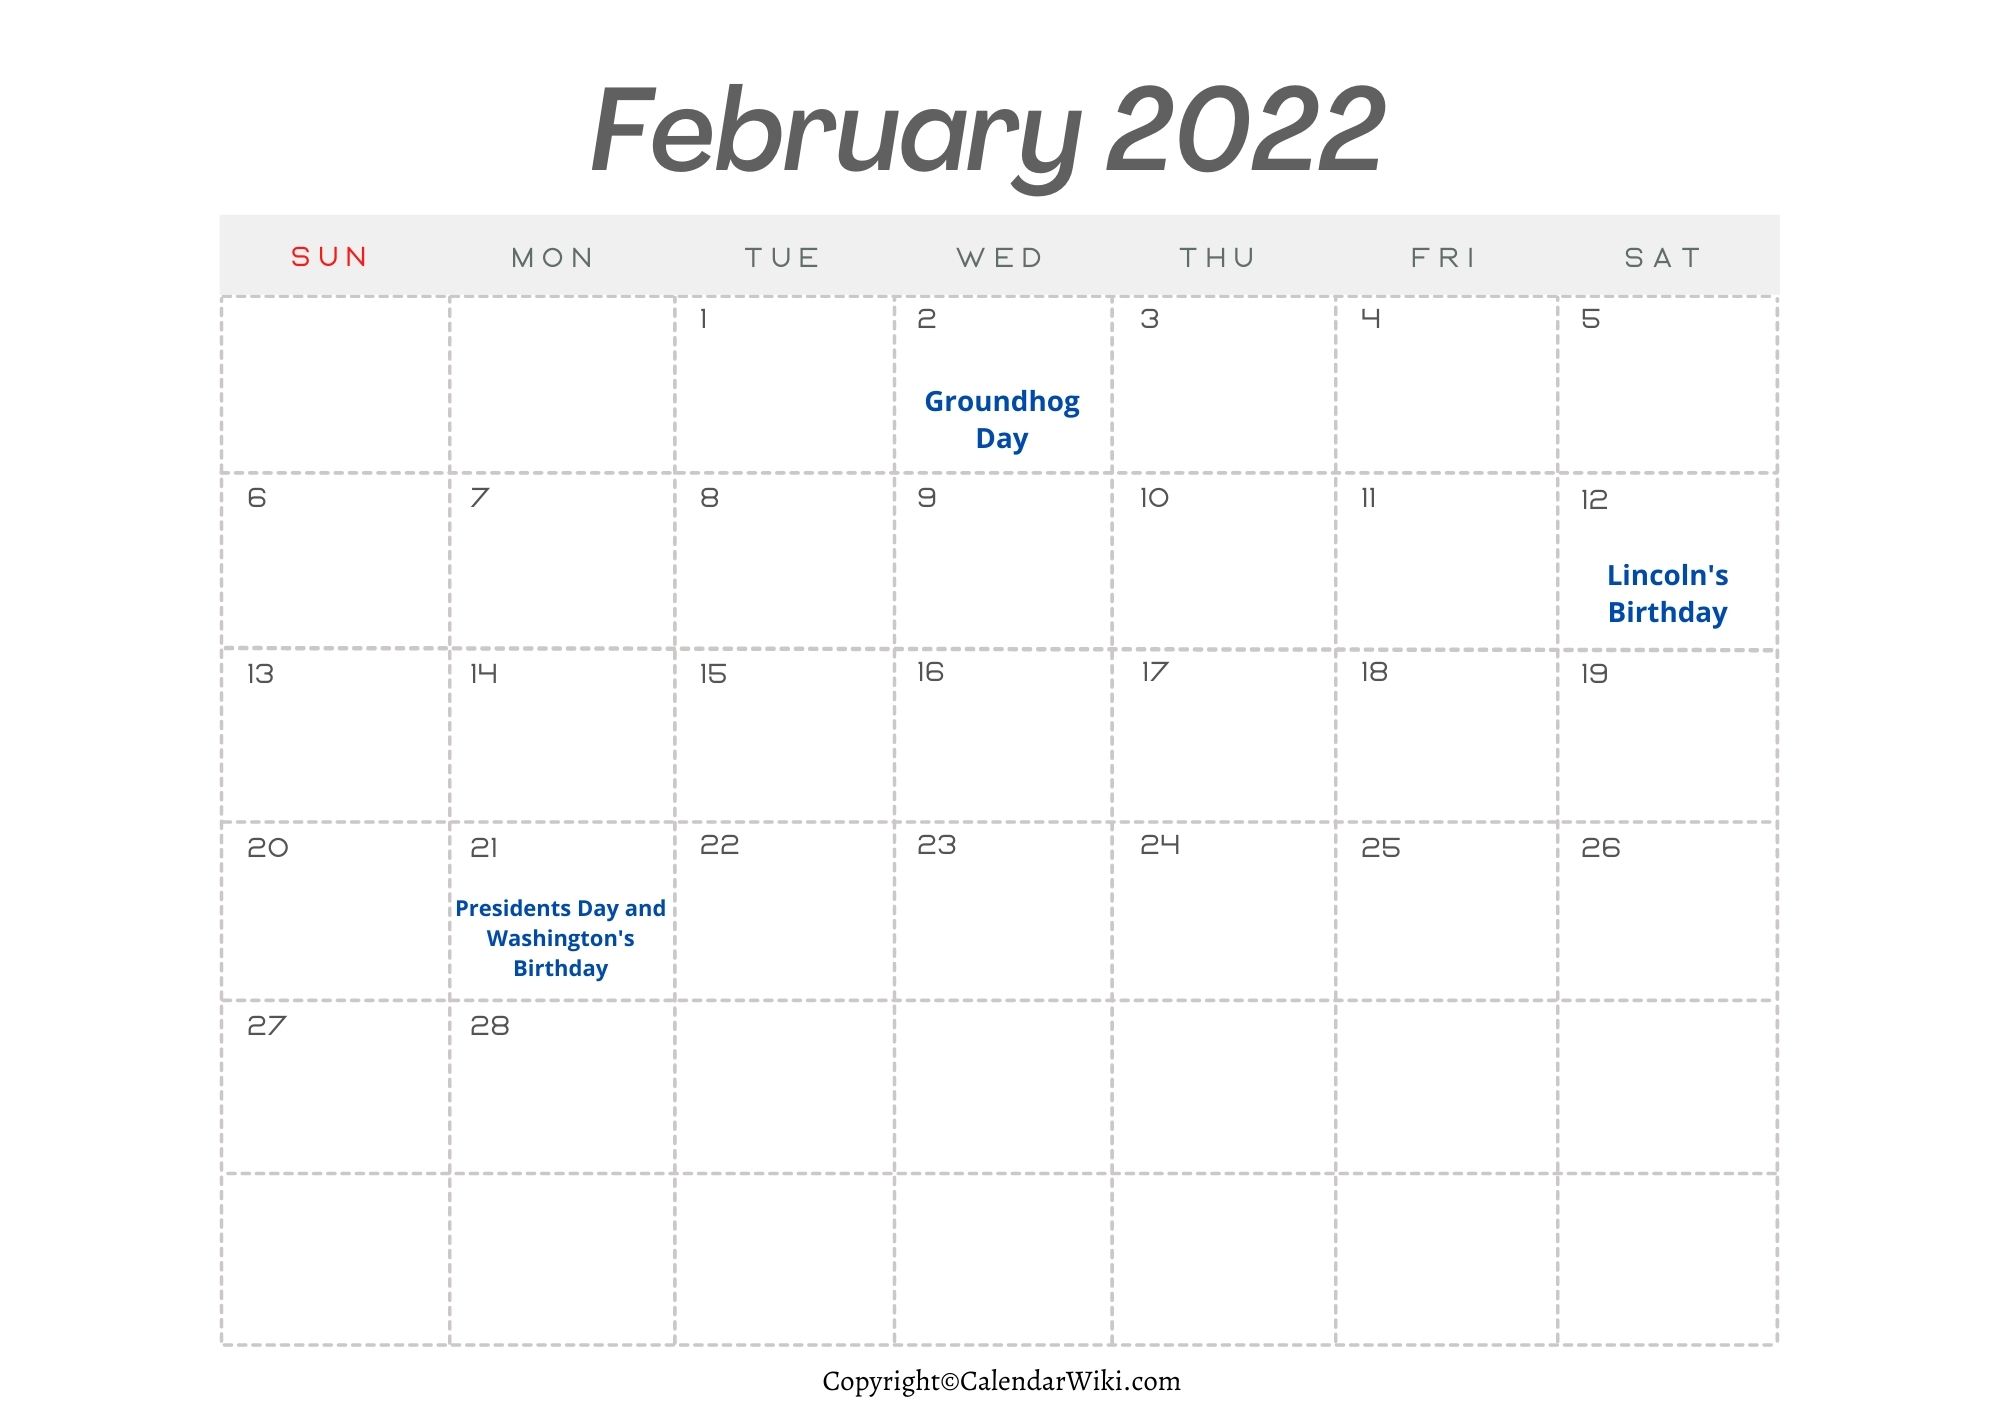 February Holidays 2022